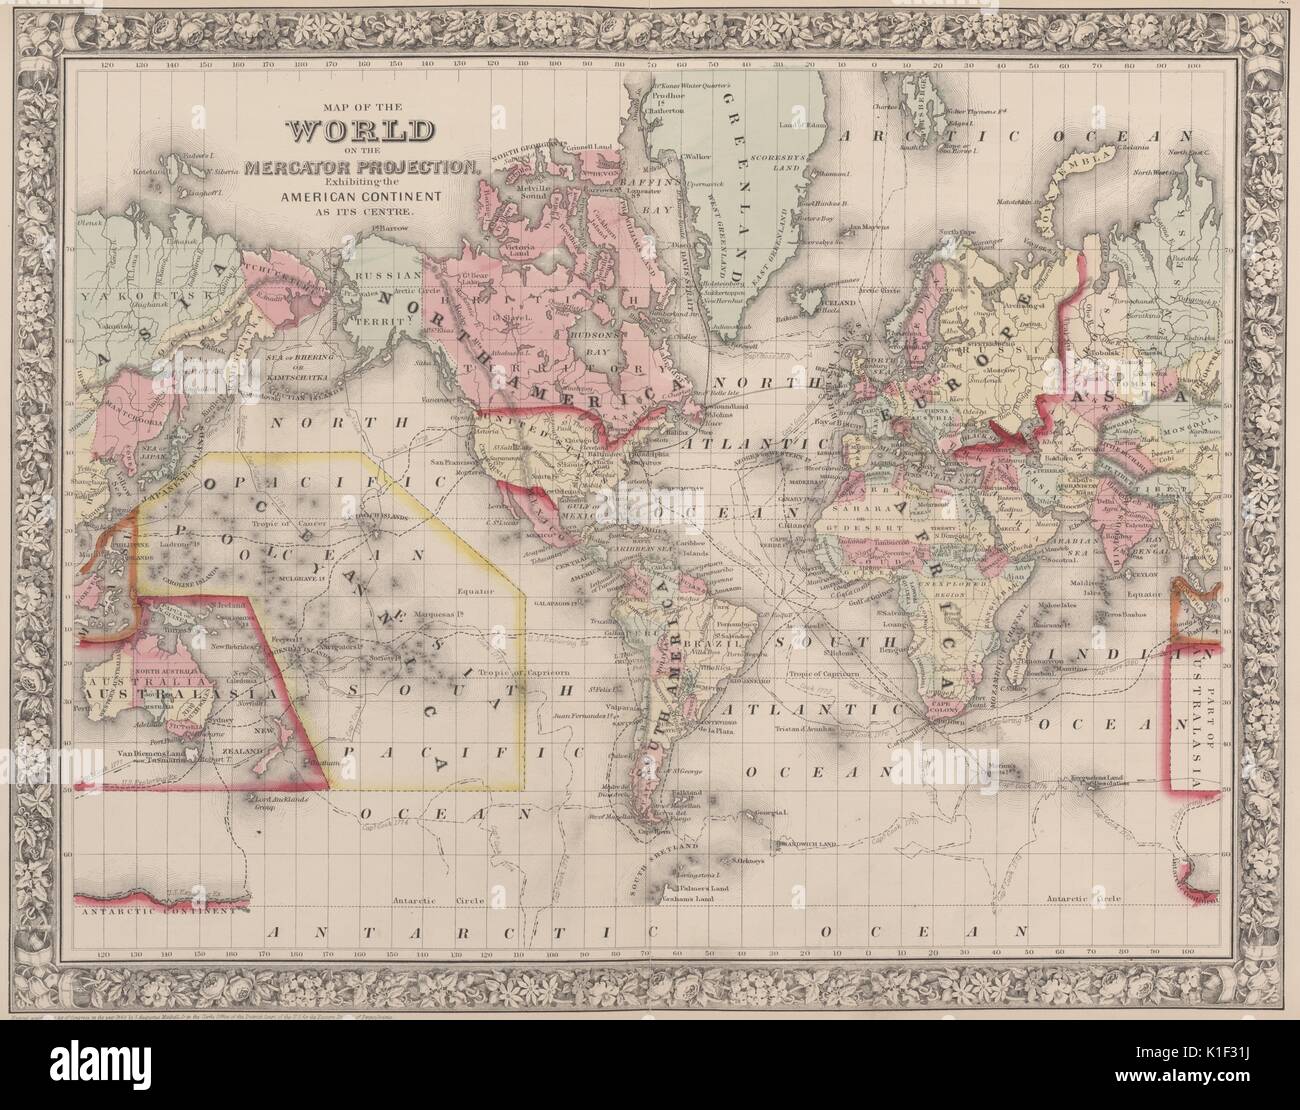 Karte der Welt auf der Mercator-Projektion, dem amerikanischen Kontinent als Mittelpunkt, 1900. Von der New York Public Library. Stockfoto